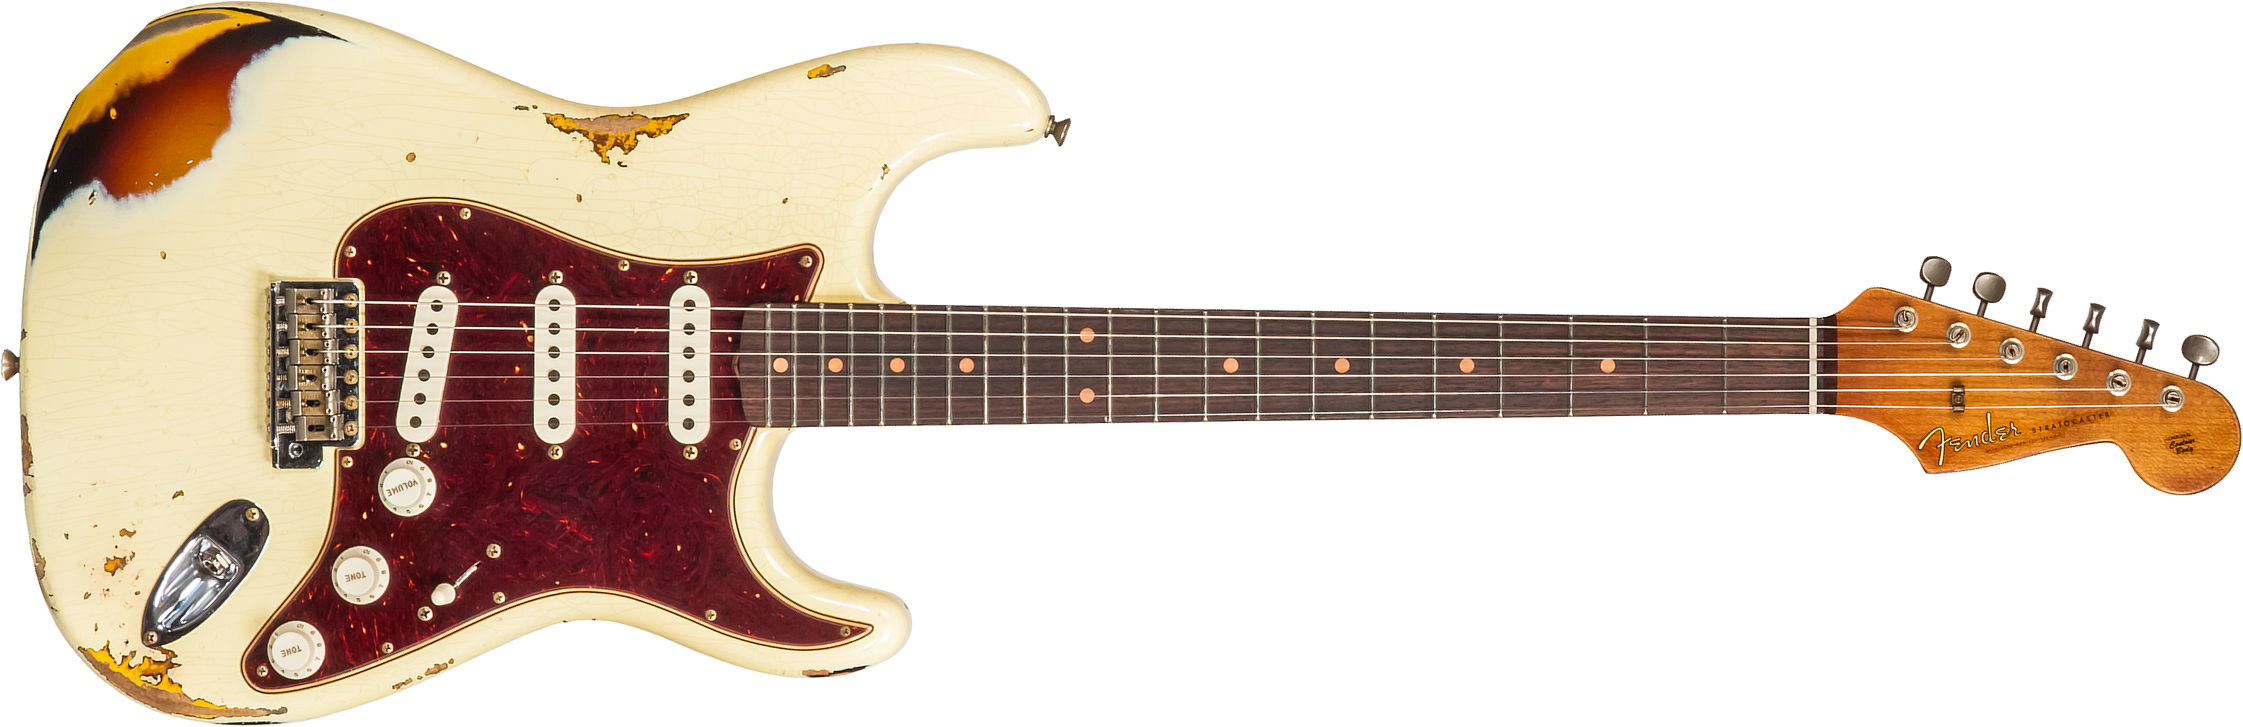 Fender Custom Shop Strat 1961 3s Trem Rw #cz563376 - Heavy Relic Vintage White/3-color Sunburst - Guitare Électrique Forme Str - Main picture